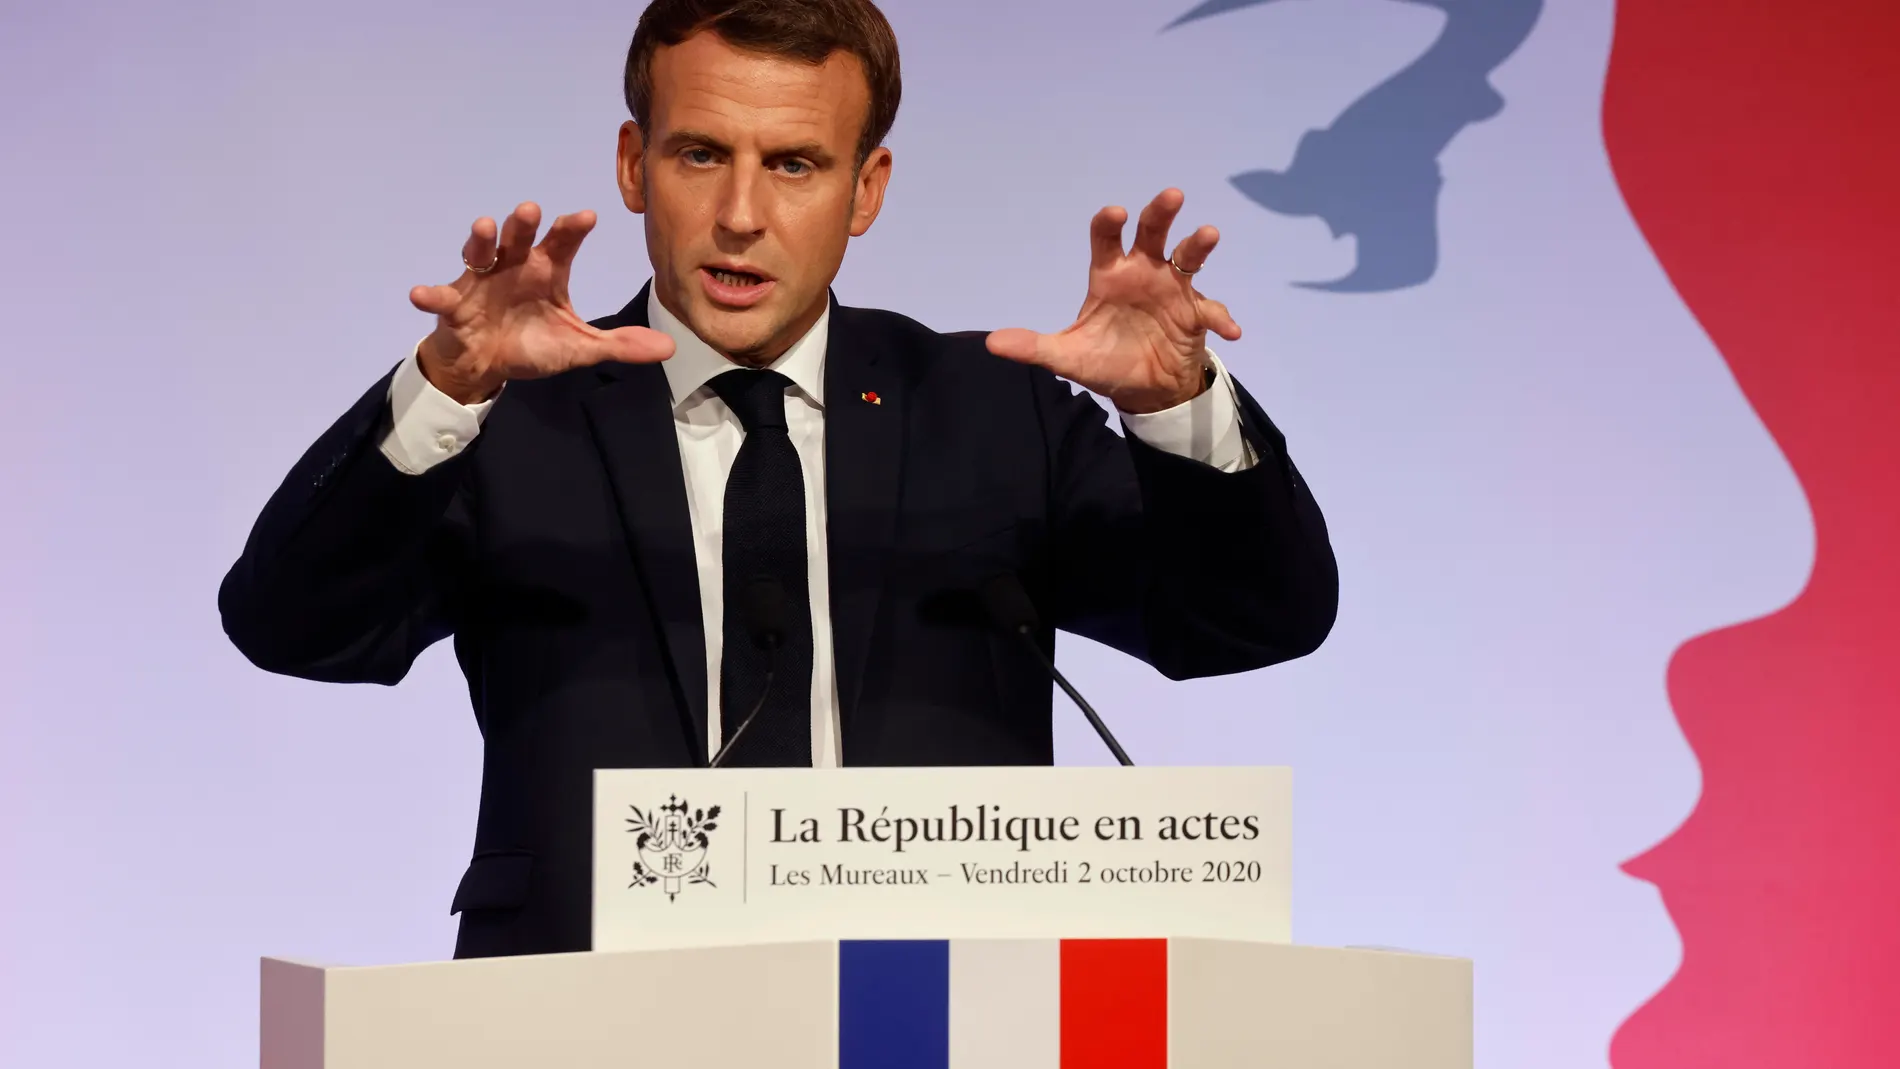 Macron anuncia su nuevo plan contra el “separatismo islámico” en Francia